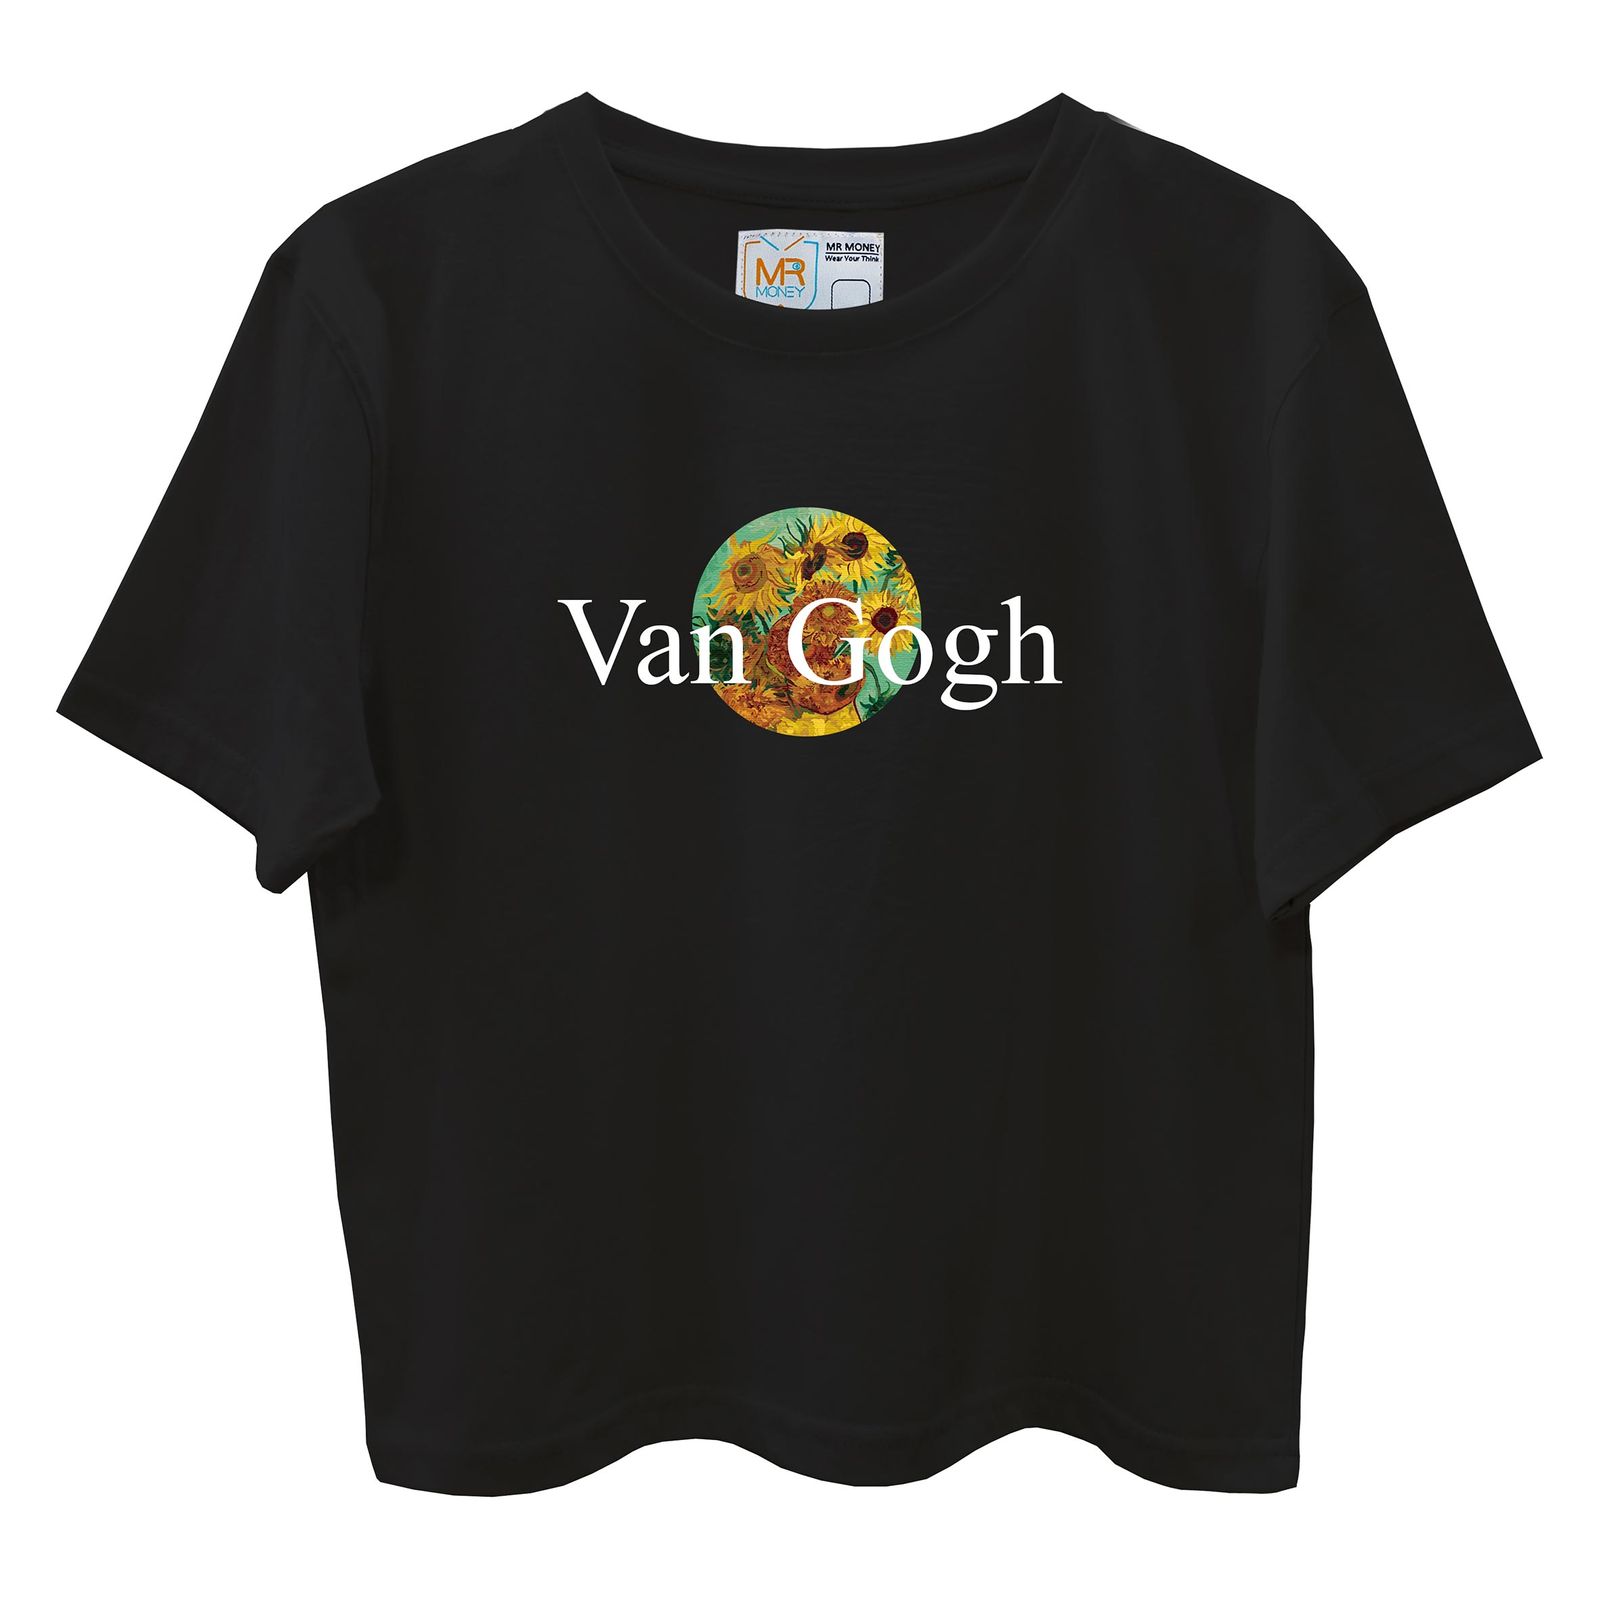 تی شرت آستین کوتاه زنانه مسترمانی مدل گل آفتابگردون ونگوگ 402 -  - 2